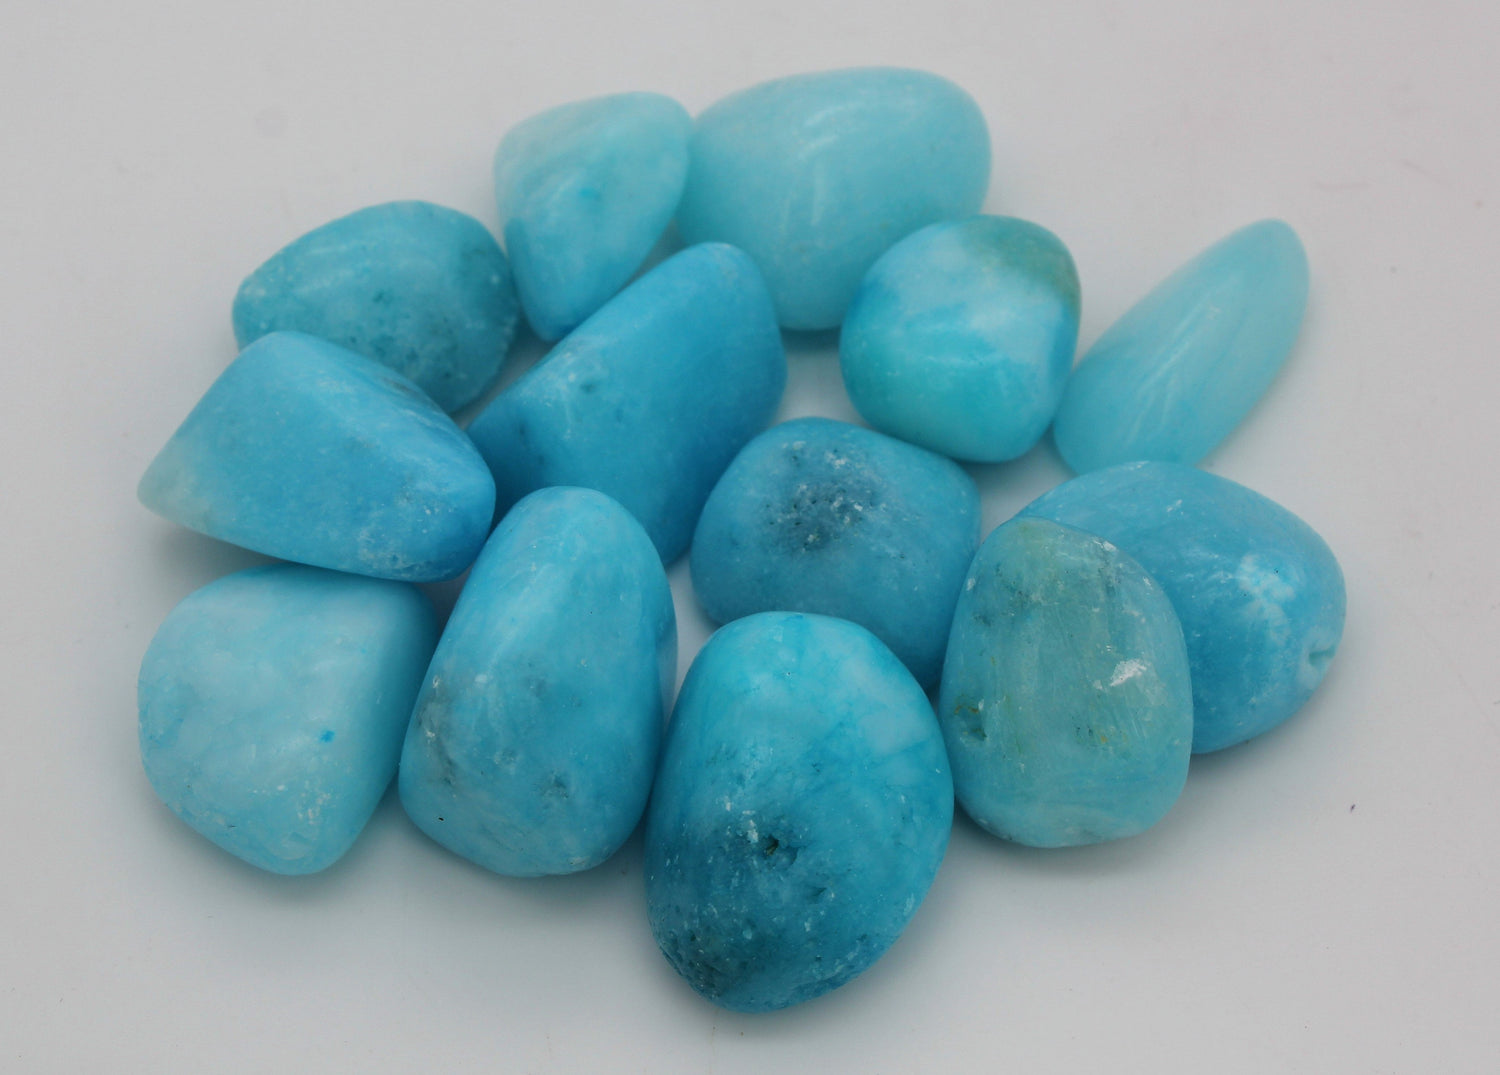 Blue Aragonite Tumbled Stone